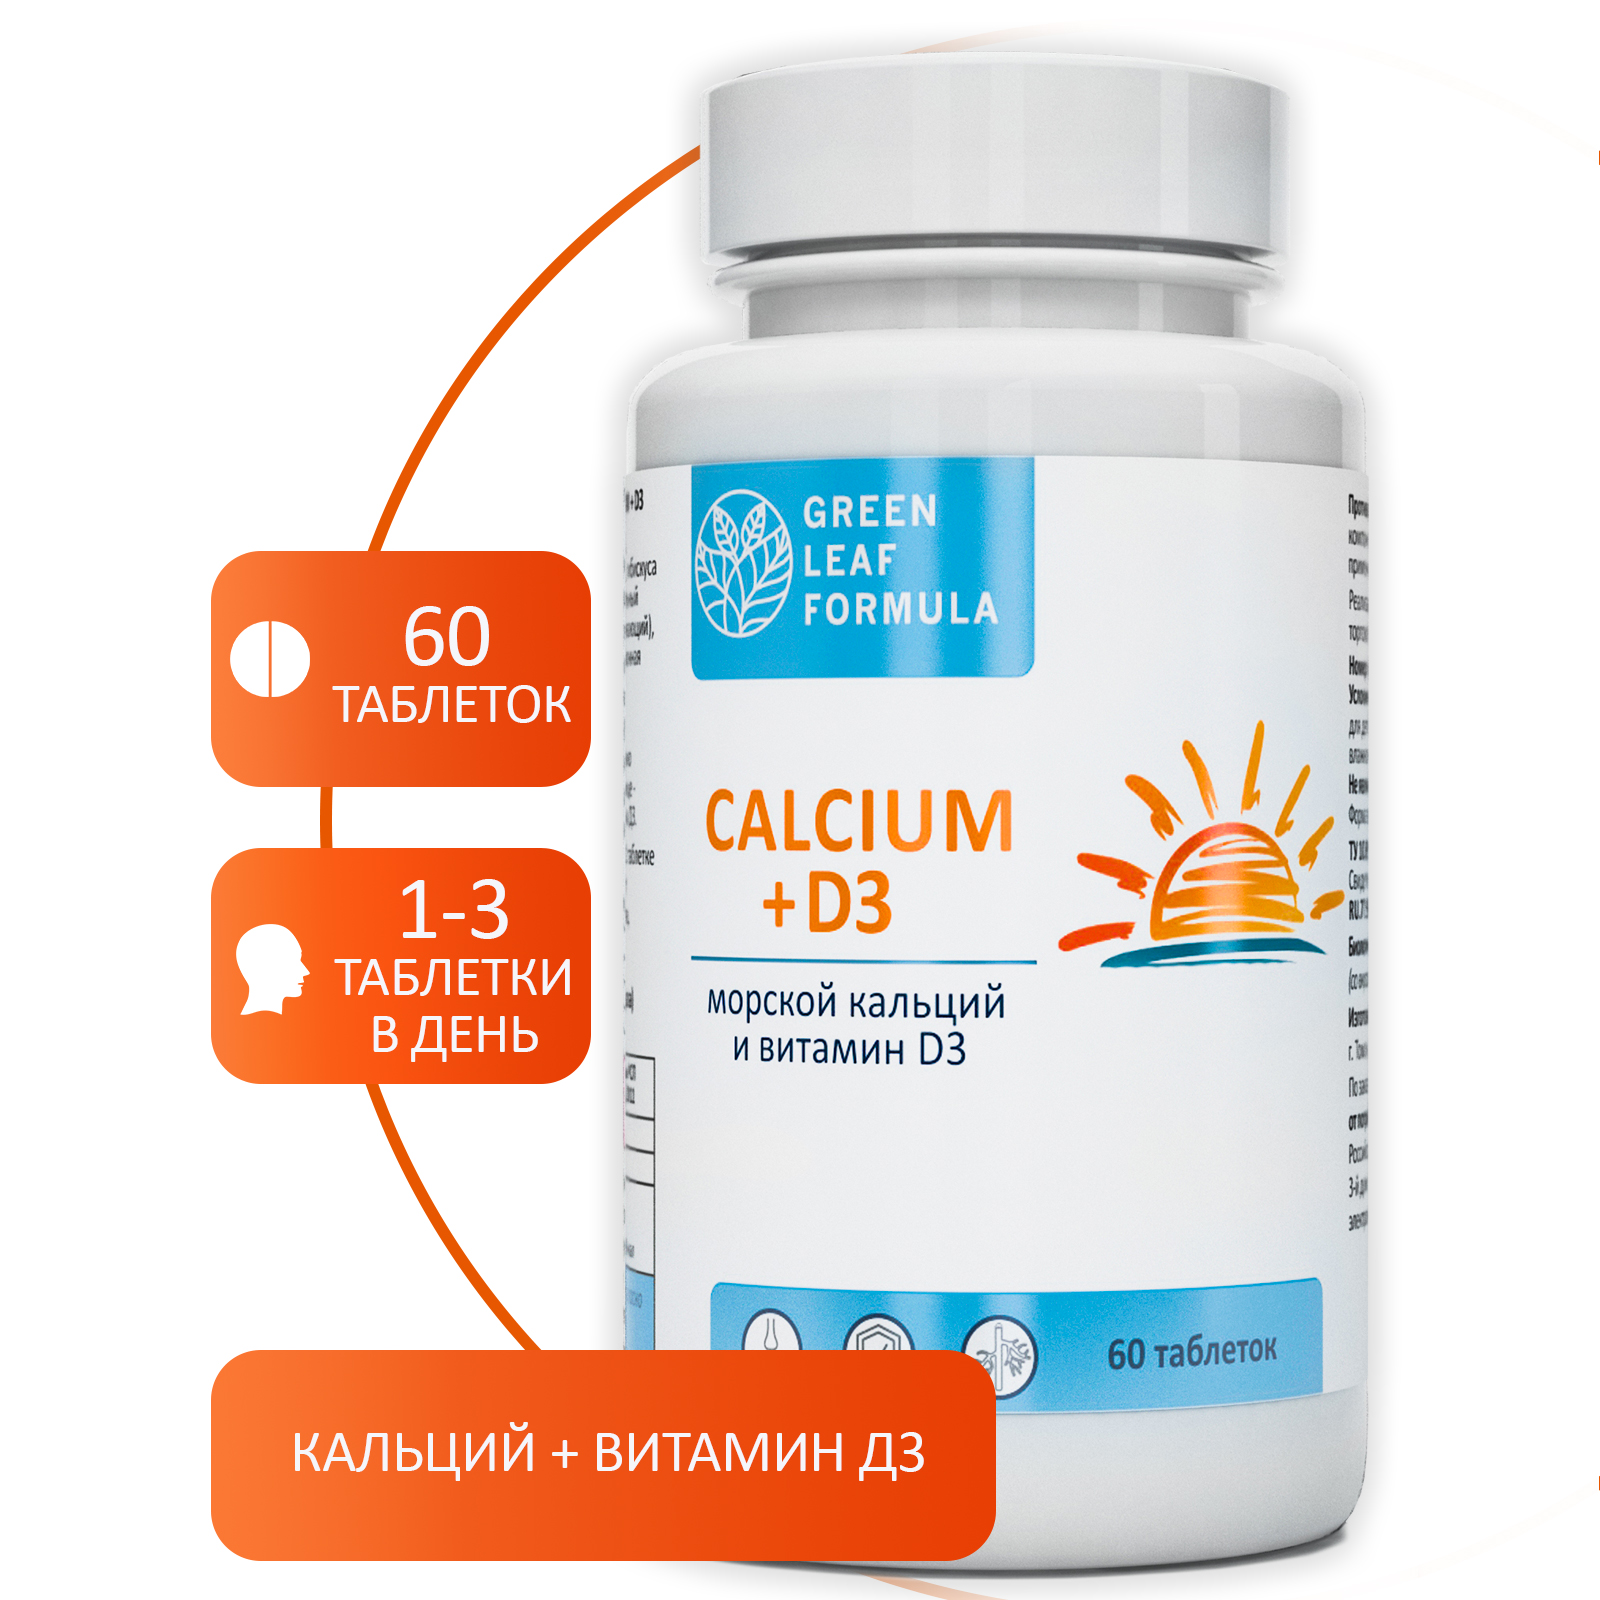 Calcium D3 Кальций Д3 Green Leaf Formula витамины для костей и суставов 2 банки по 60 таблеток - фото 3